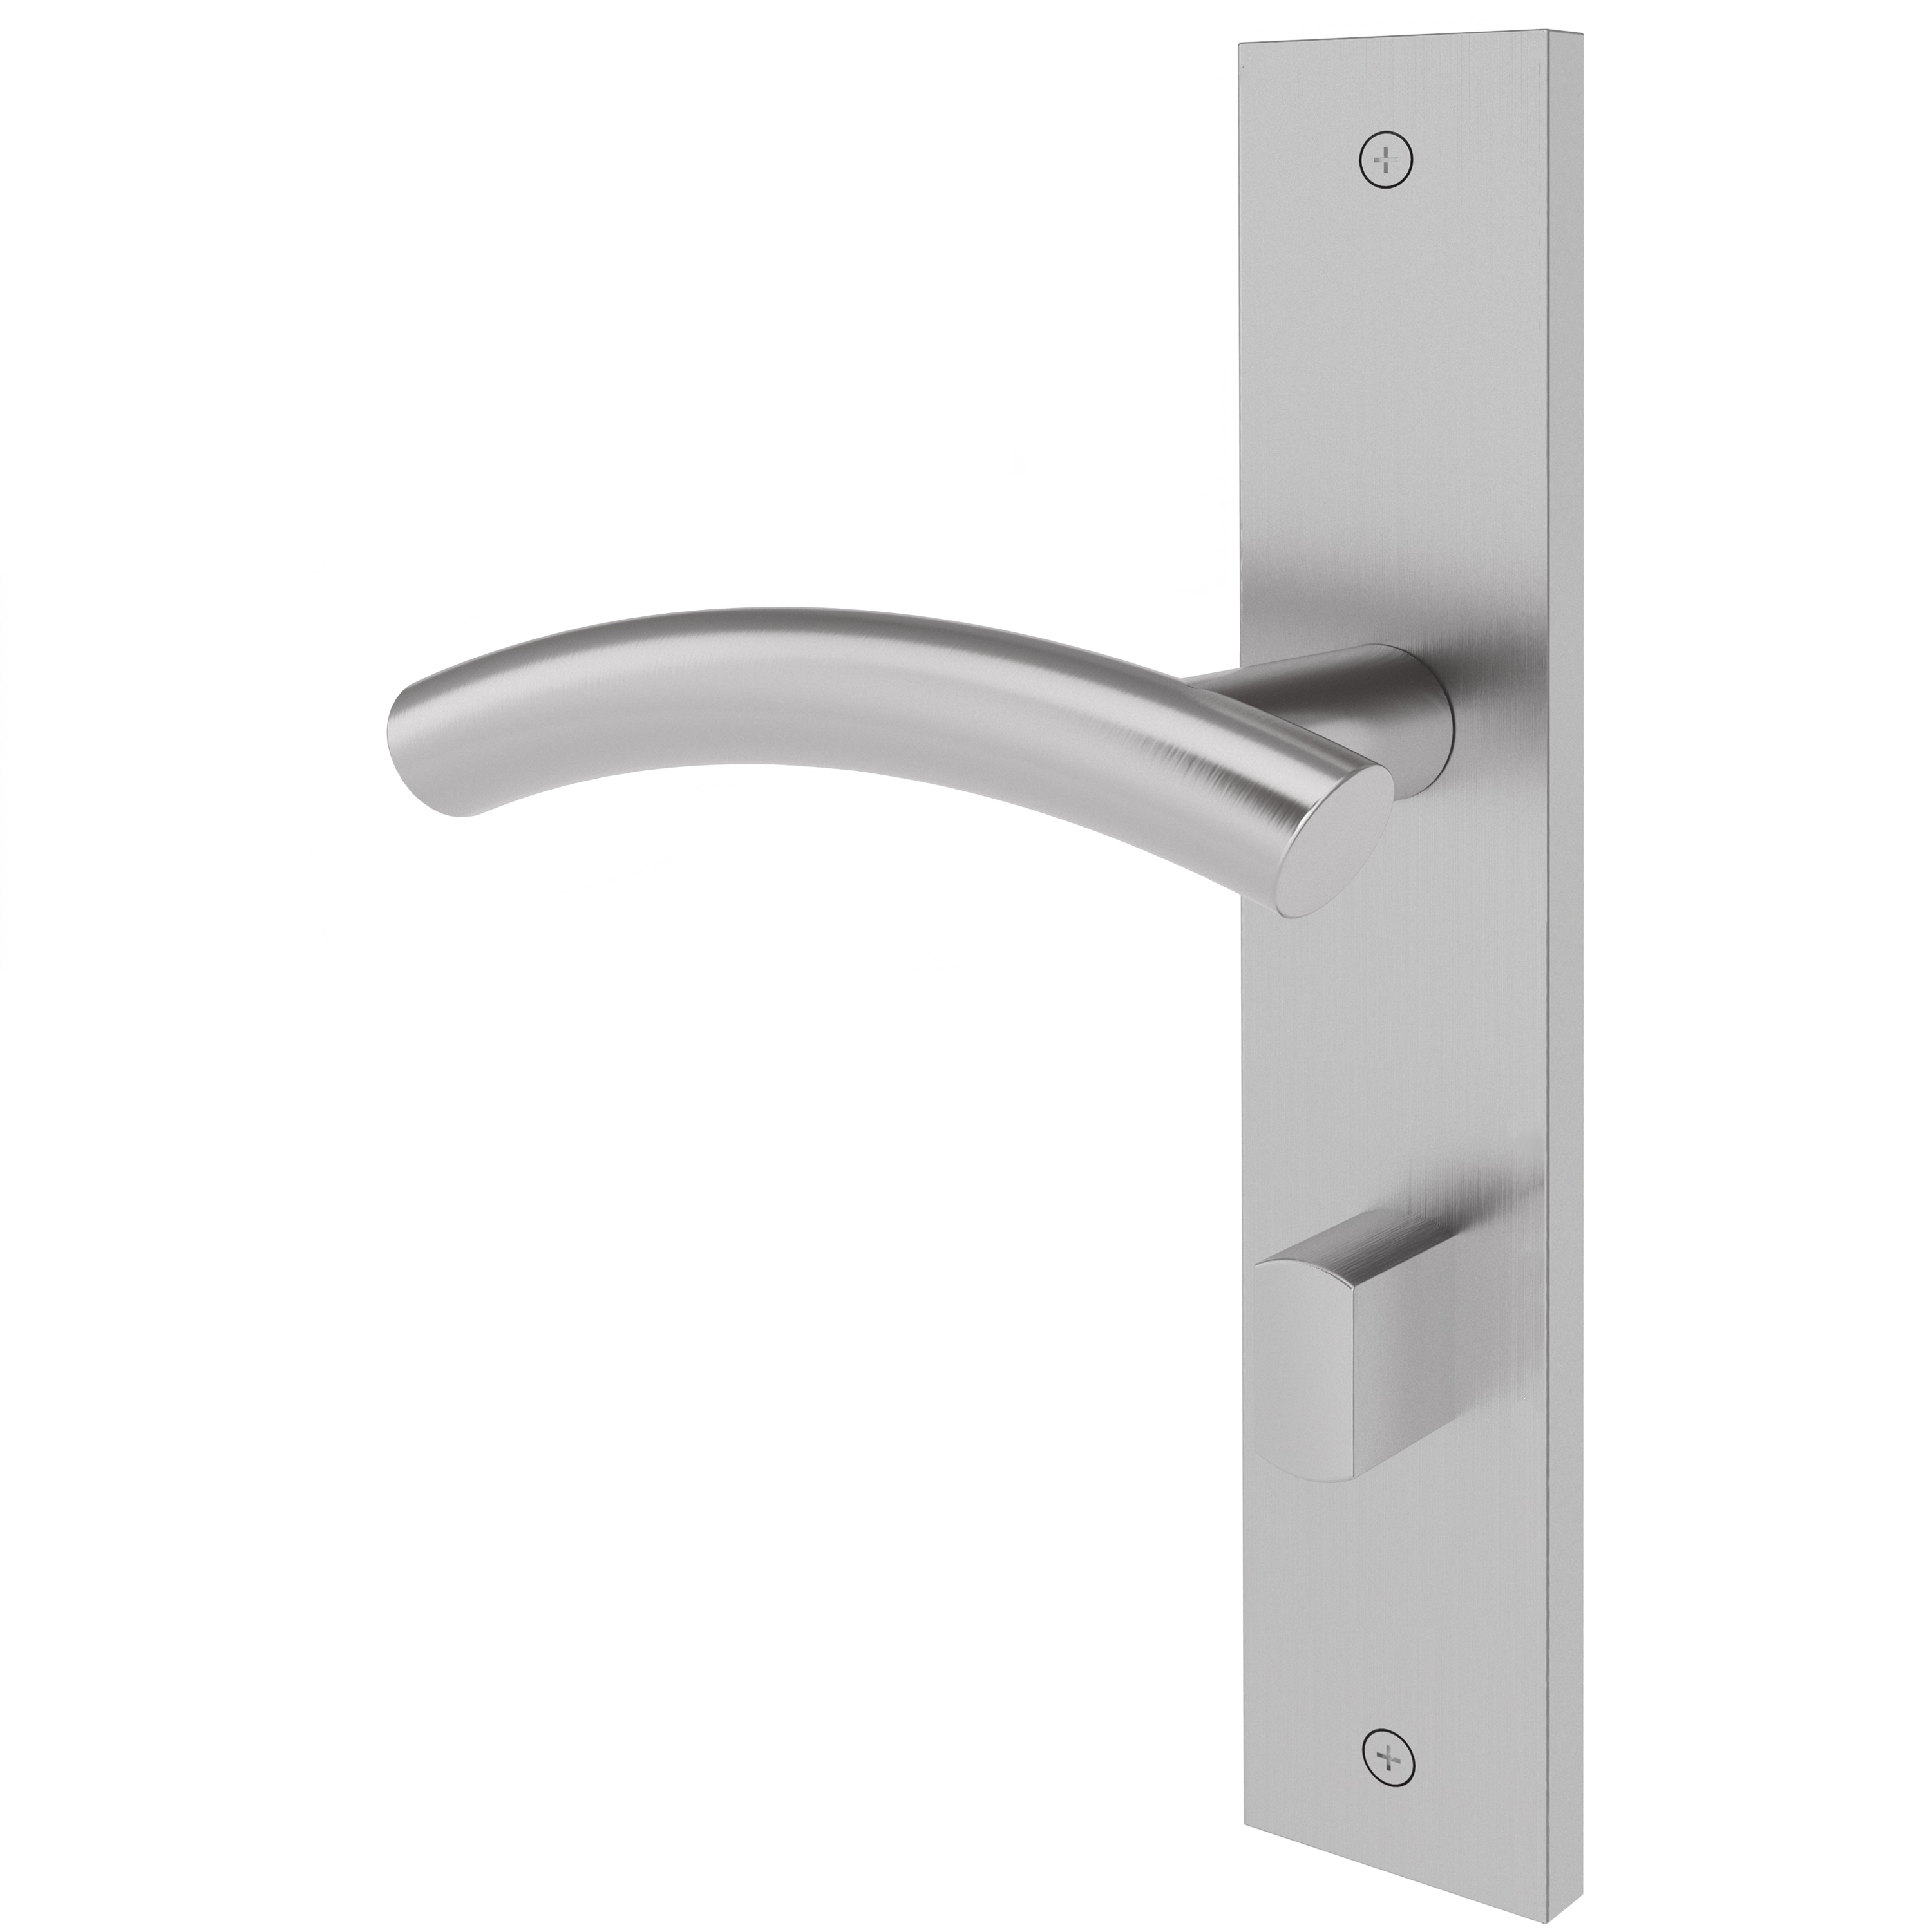 Langschildgarnitur eckig L-Form geschwungen Modell Sylora Edelstahl geschraubt Klasse 1